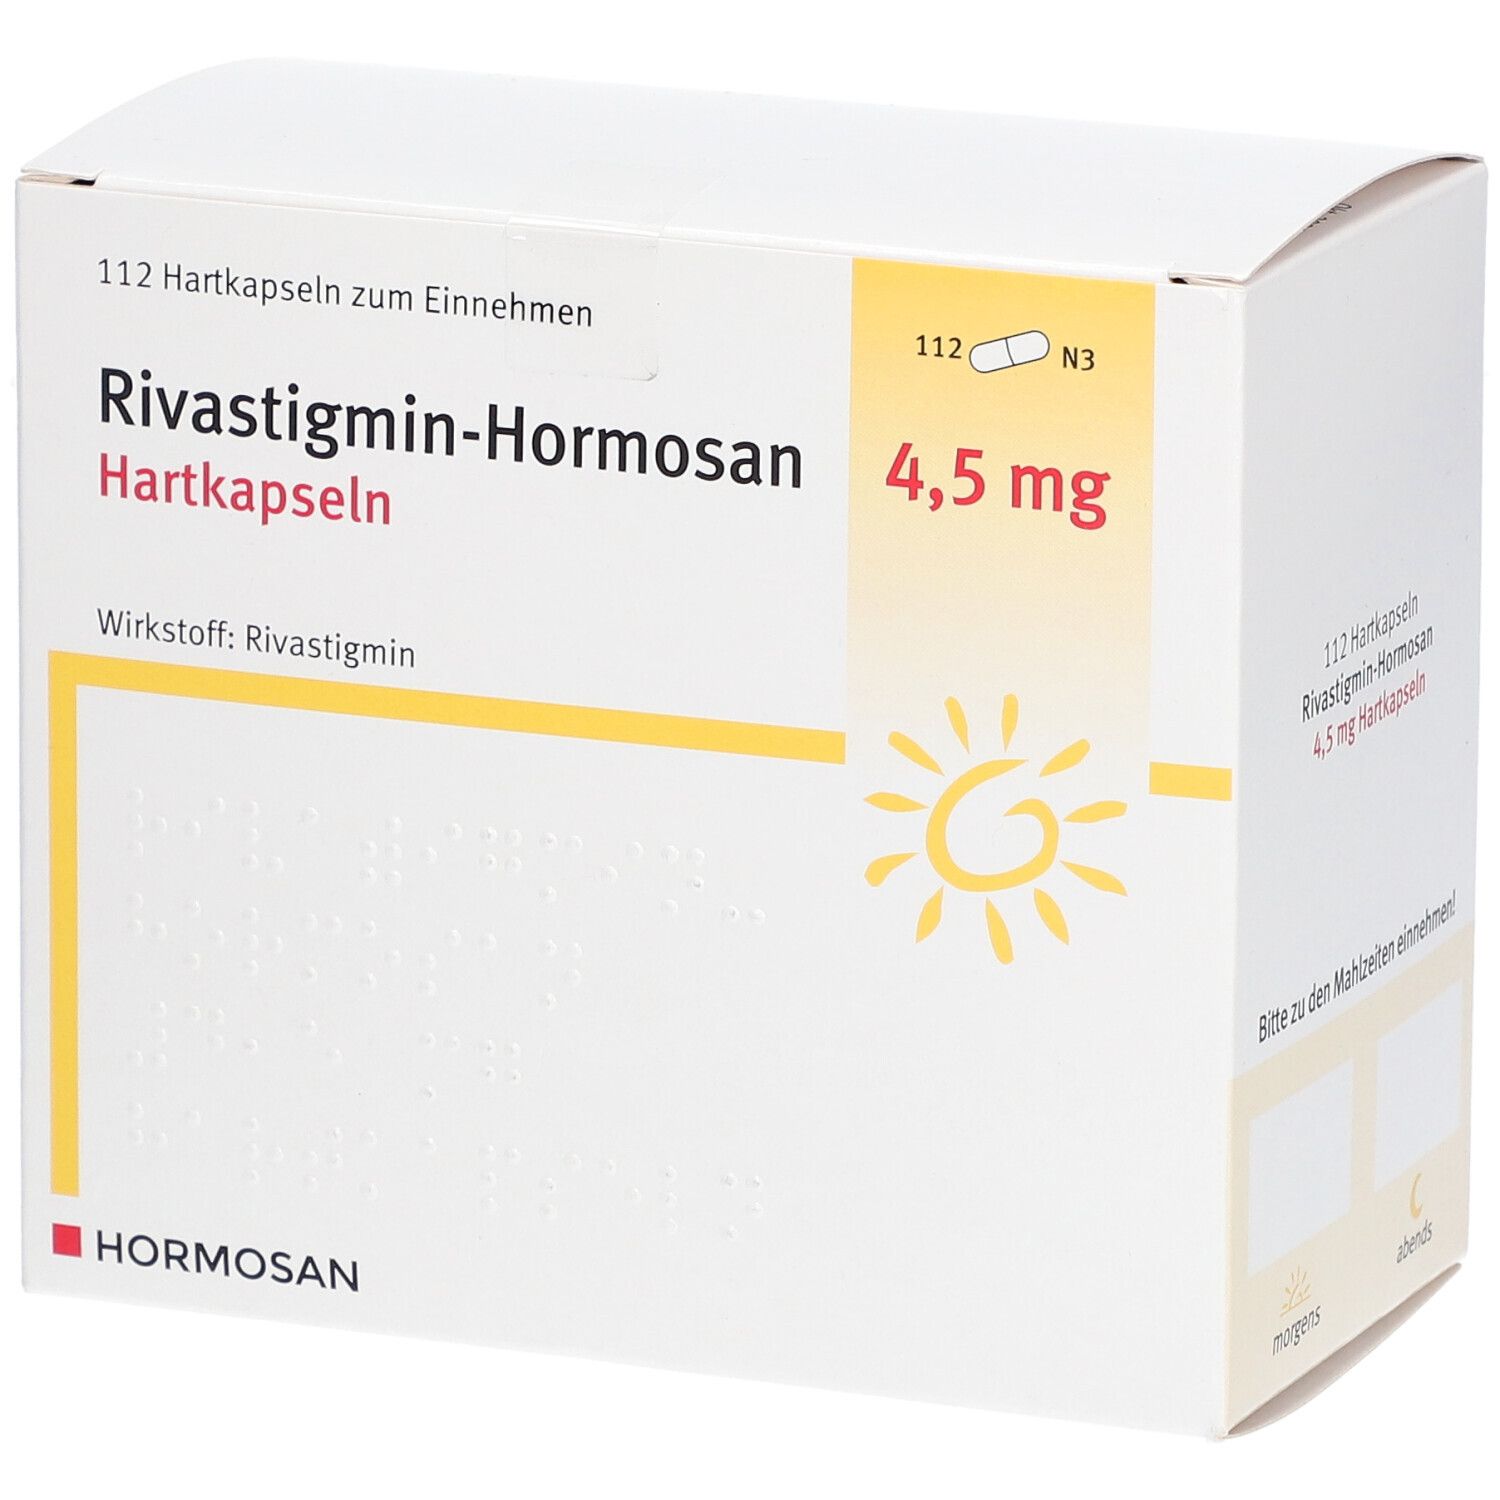 Rivastigmin-Hormosan 4,5 mg